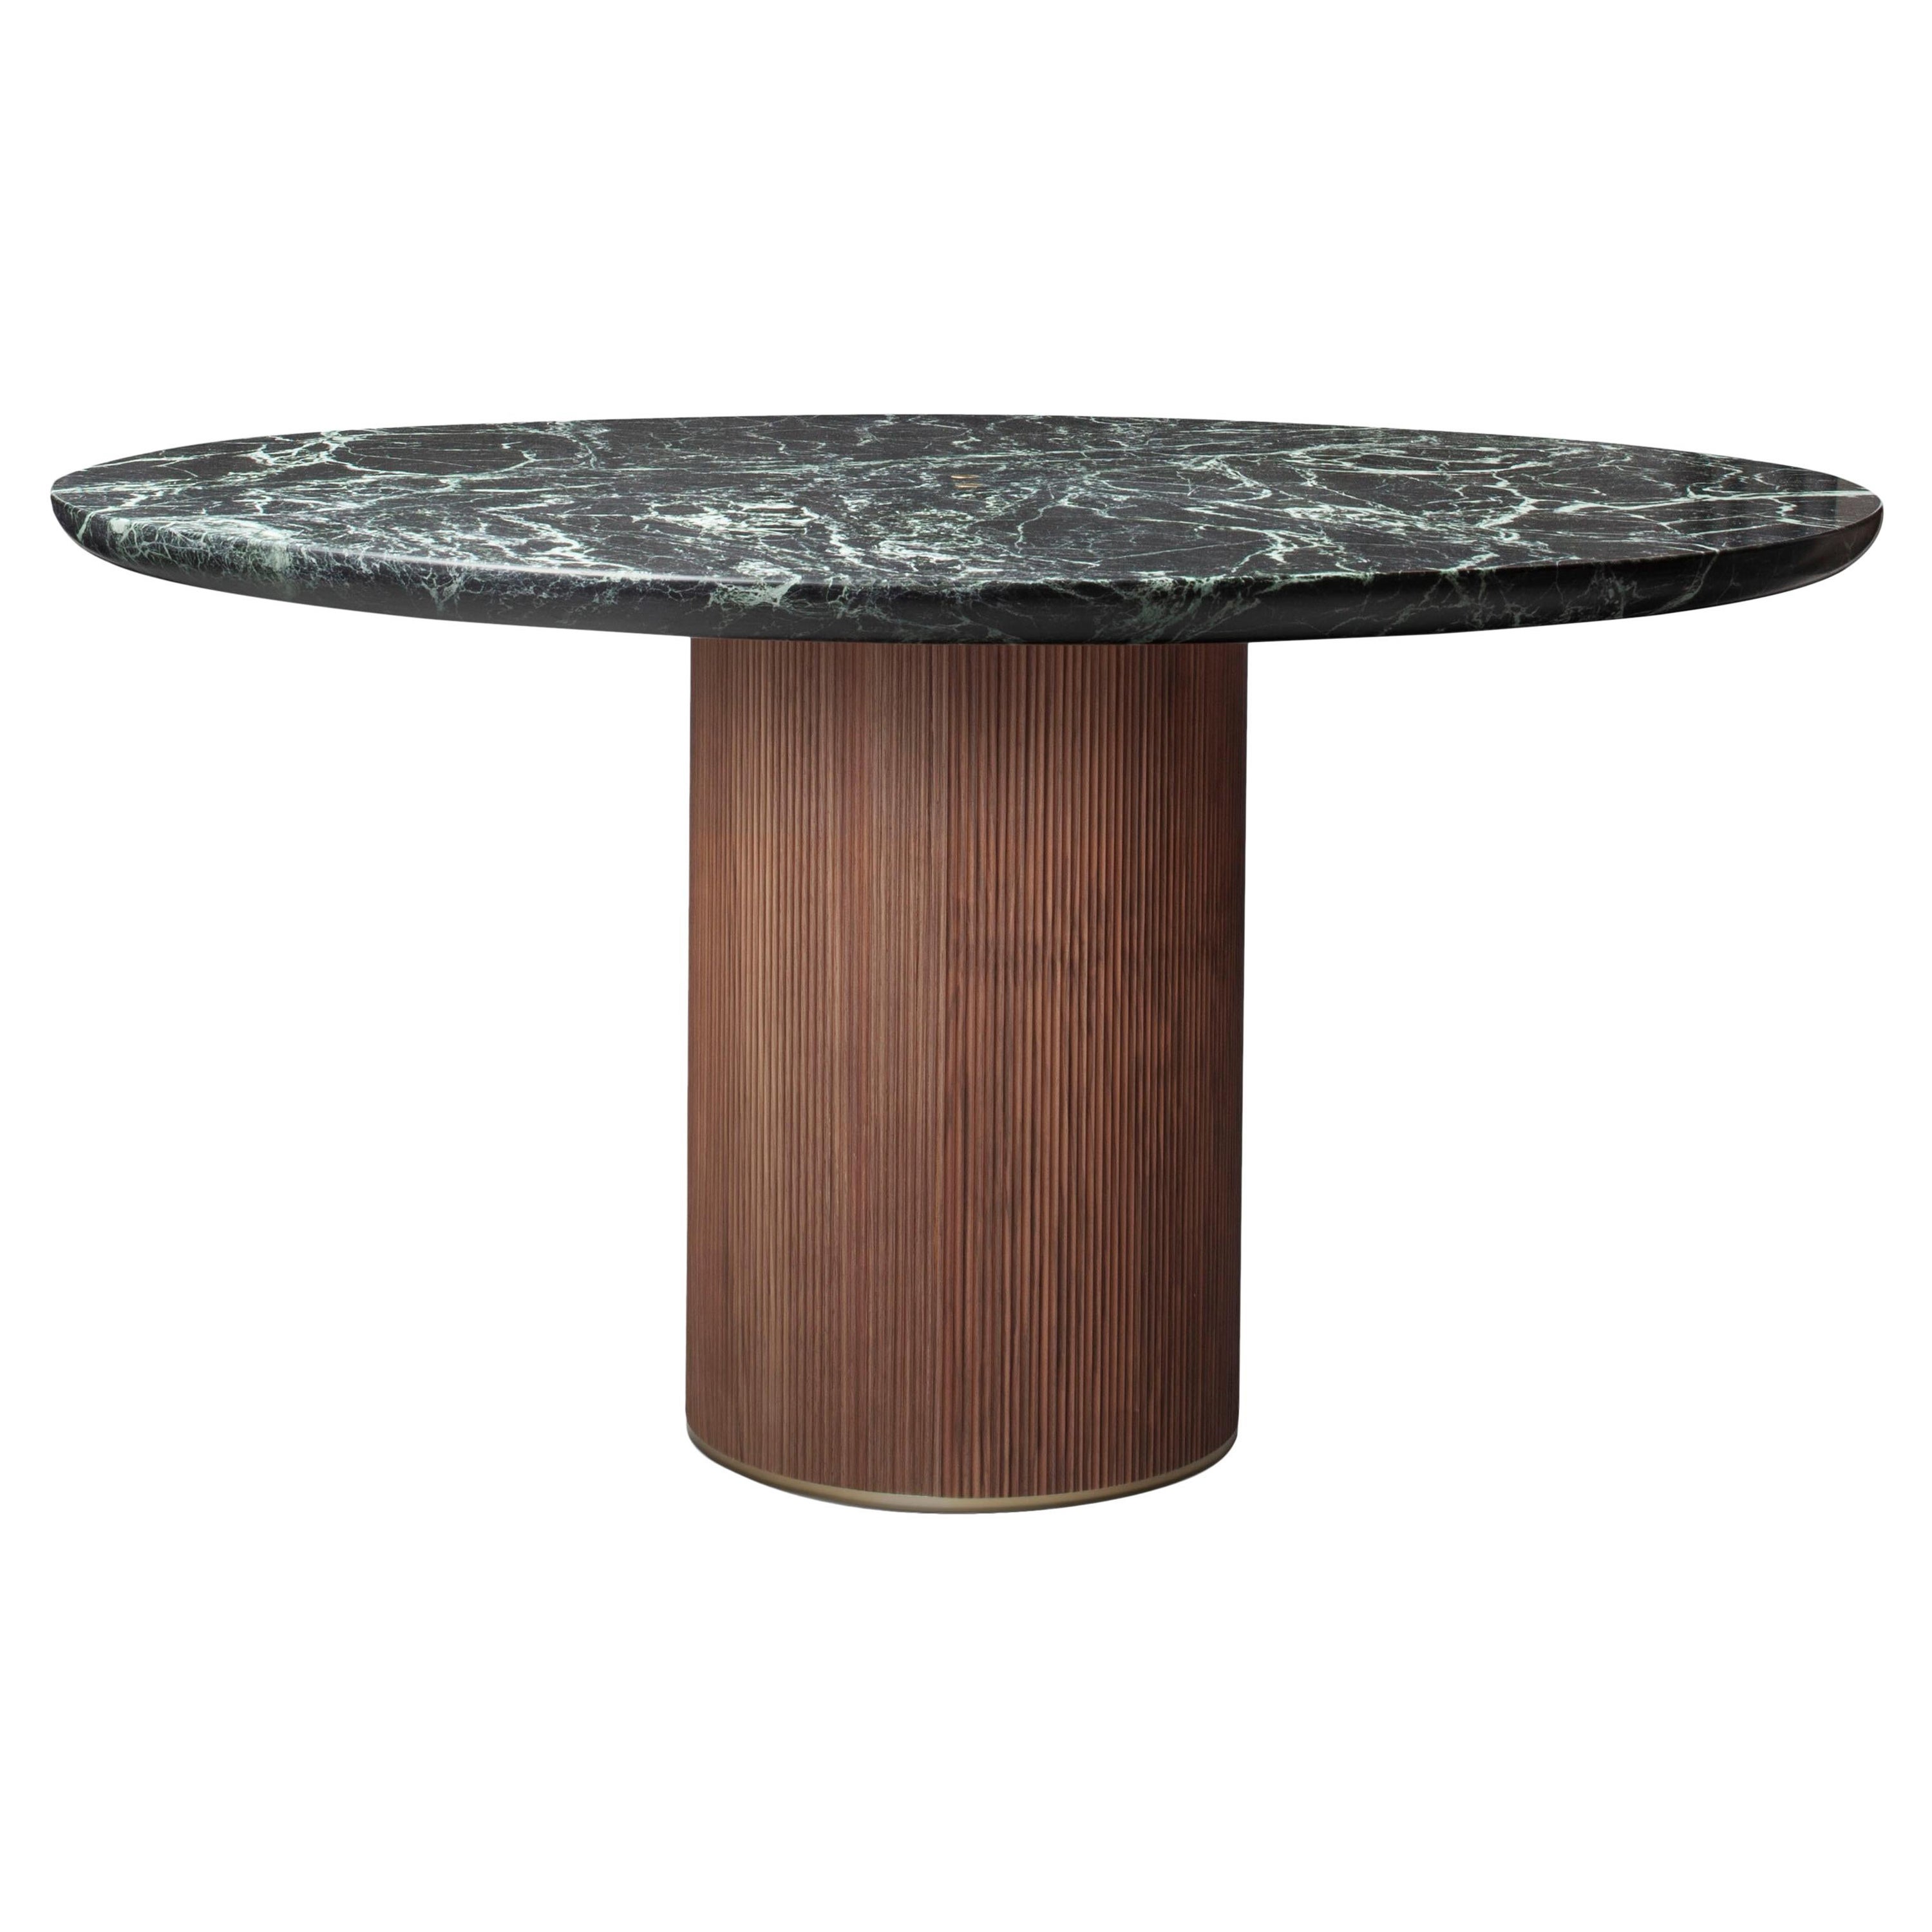 Table de salle à manger contemporaine QD05 avec plateau en marbre vert, base en noyer et laiton